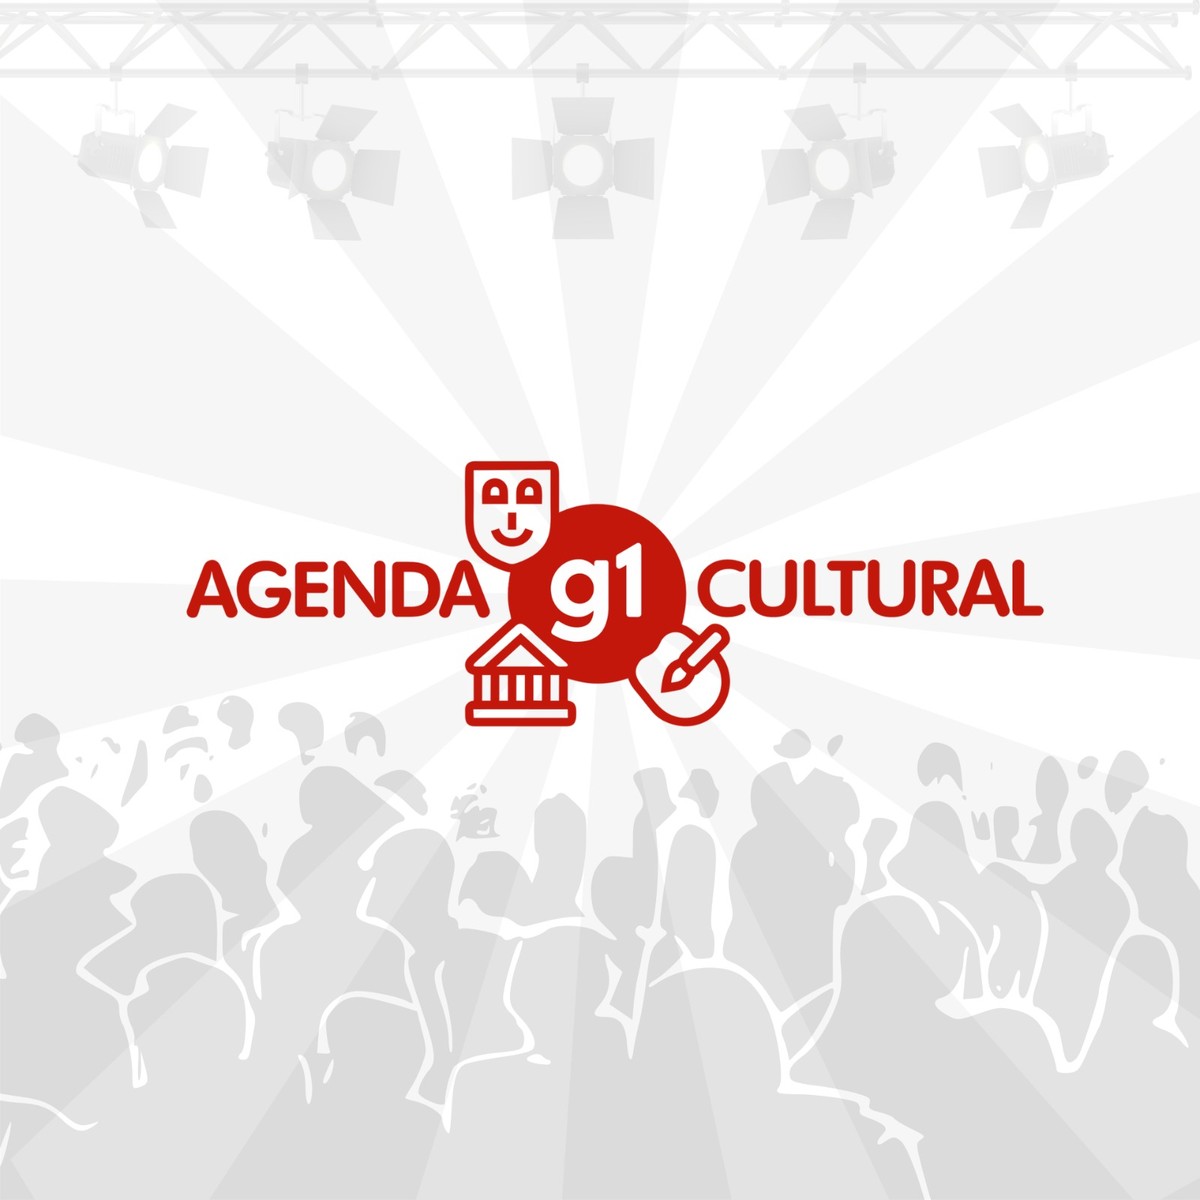 Programe-se: Confira agenda cultural desta segunda, 21 de fevereiro (21/02), VidaEArte